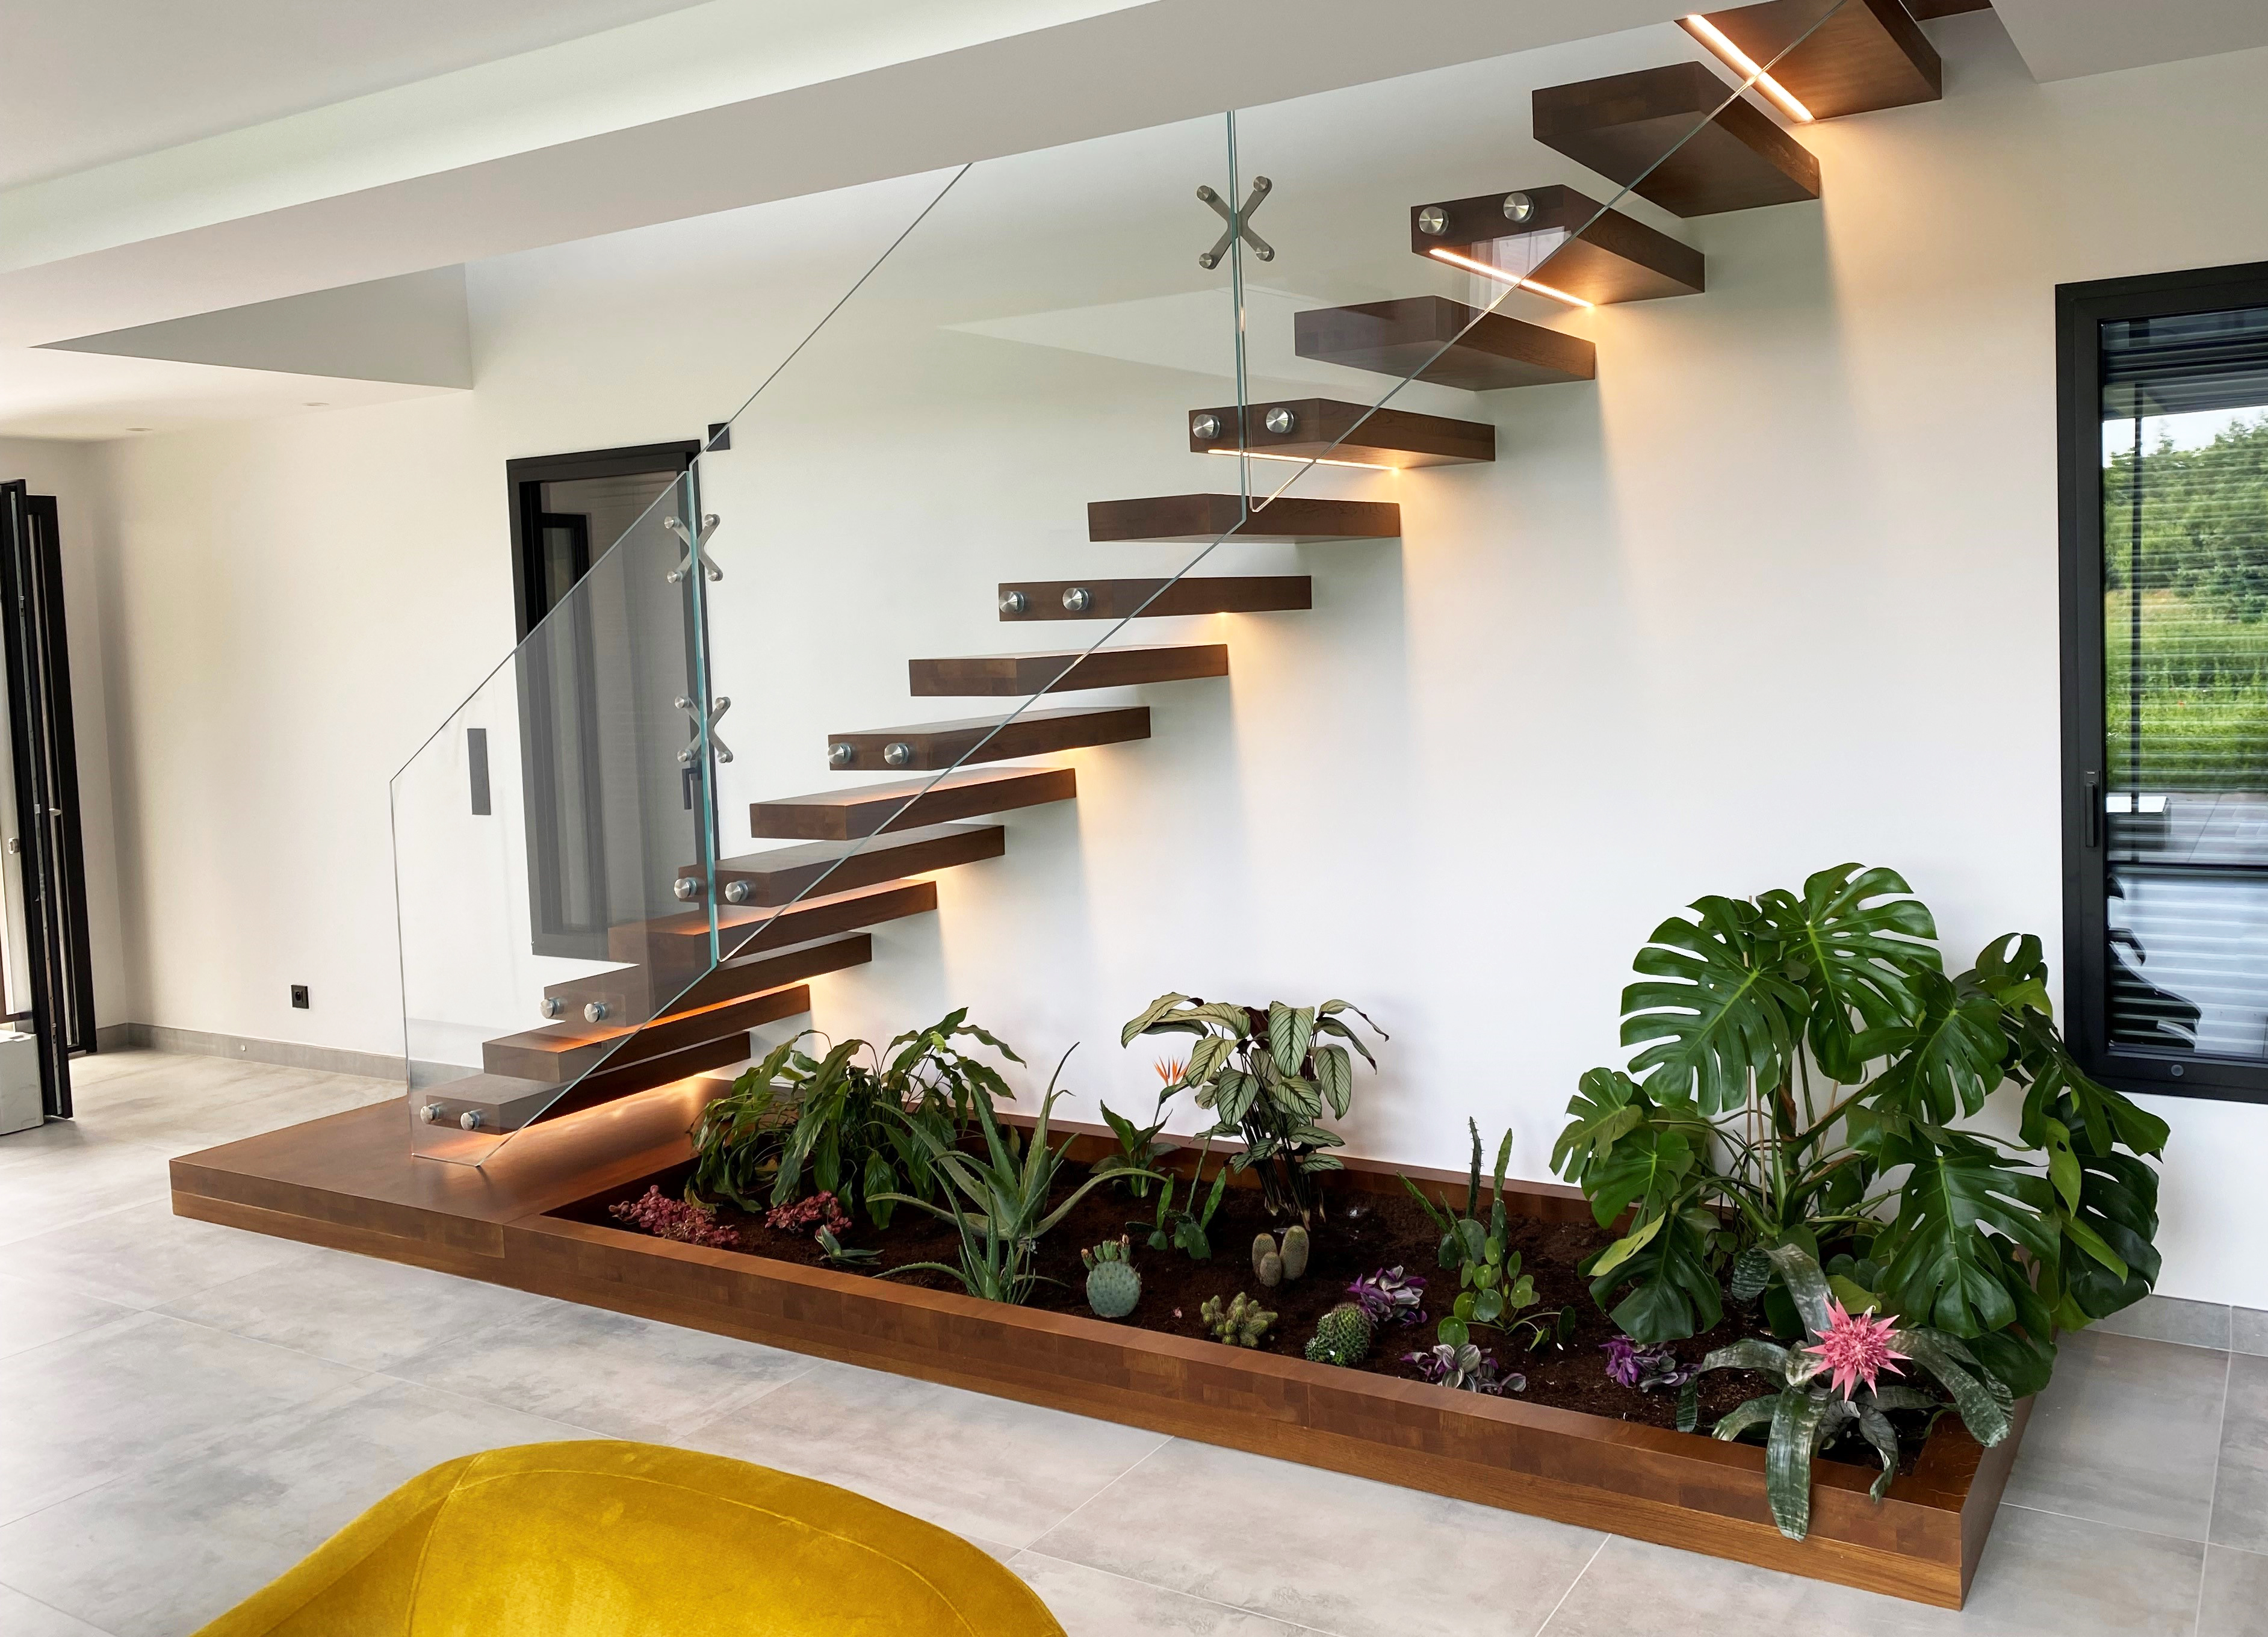 Décoration sous escalier : pensez à la jardinière sous l'escalier